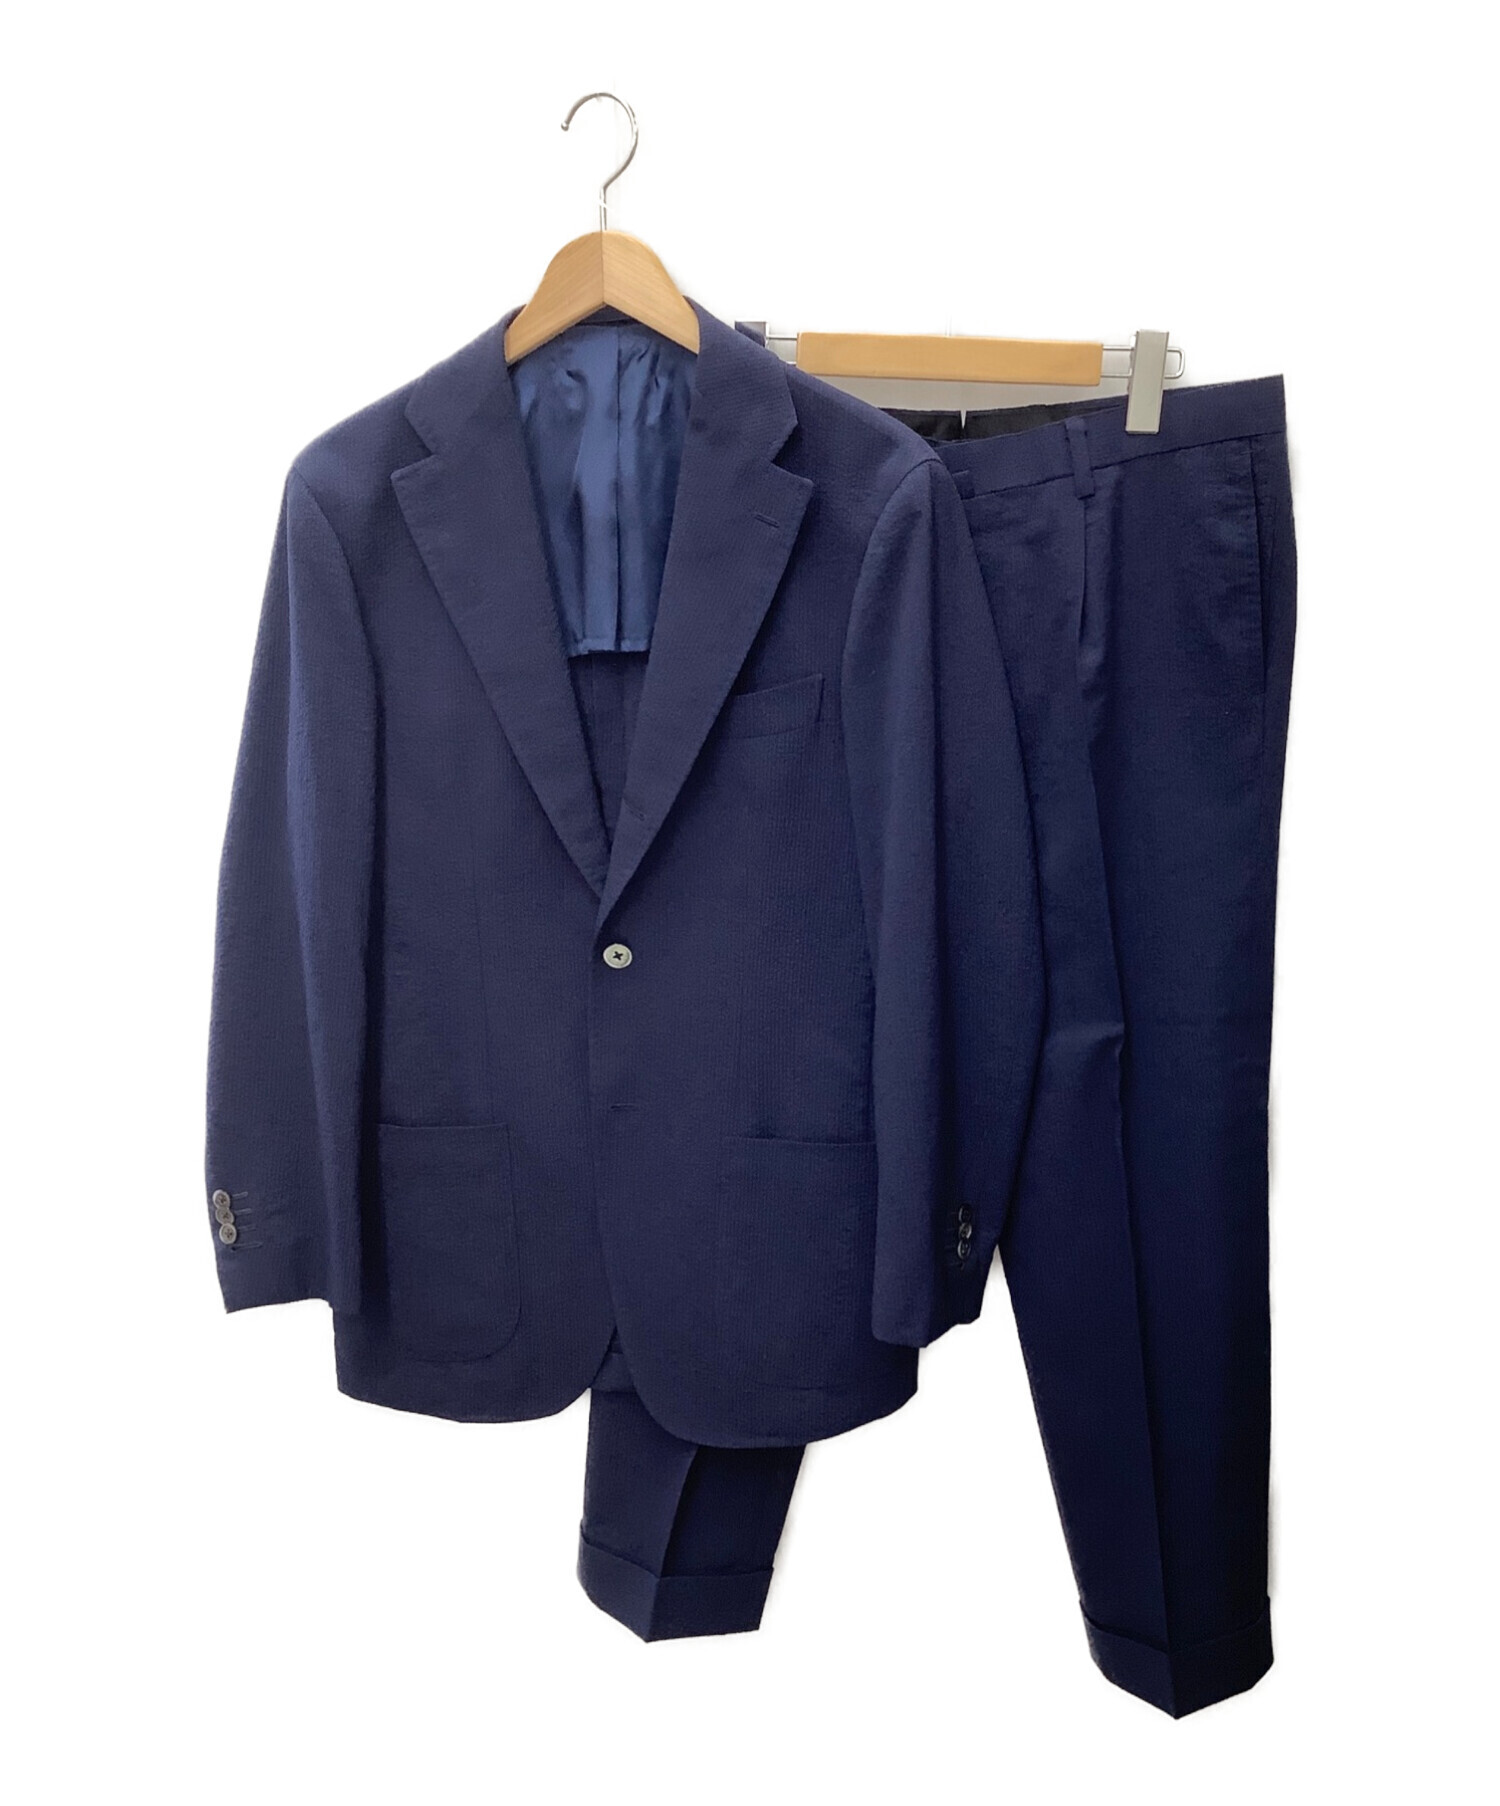 リングジャケット ネイビー スーツ セットアップ 50サイズ